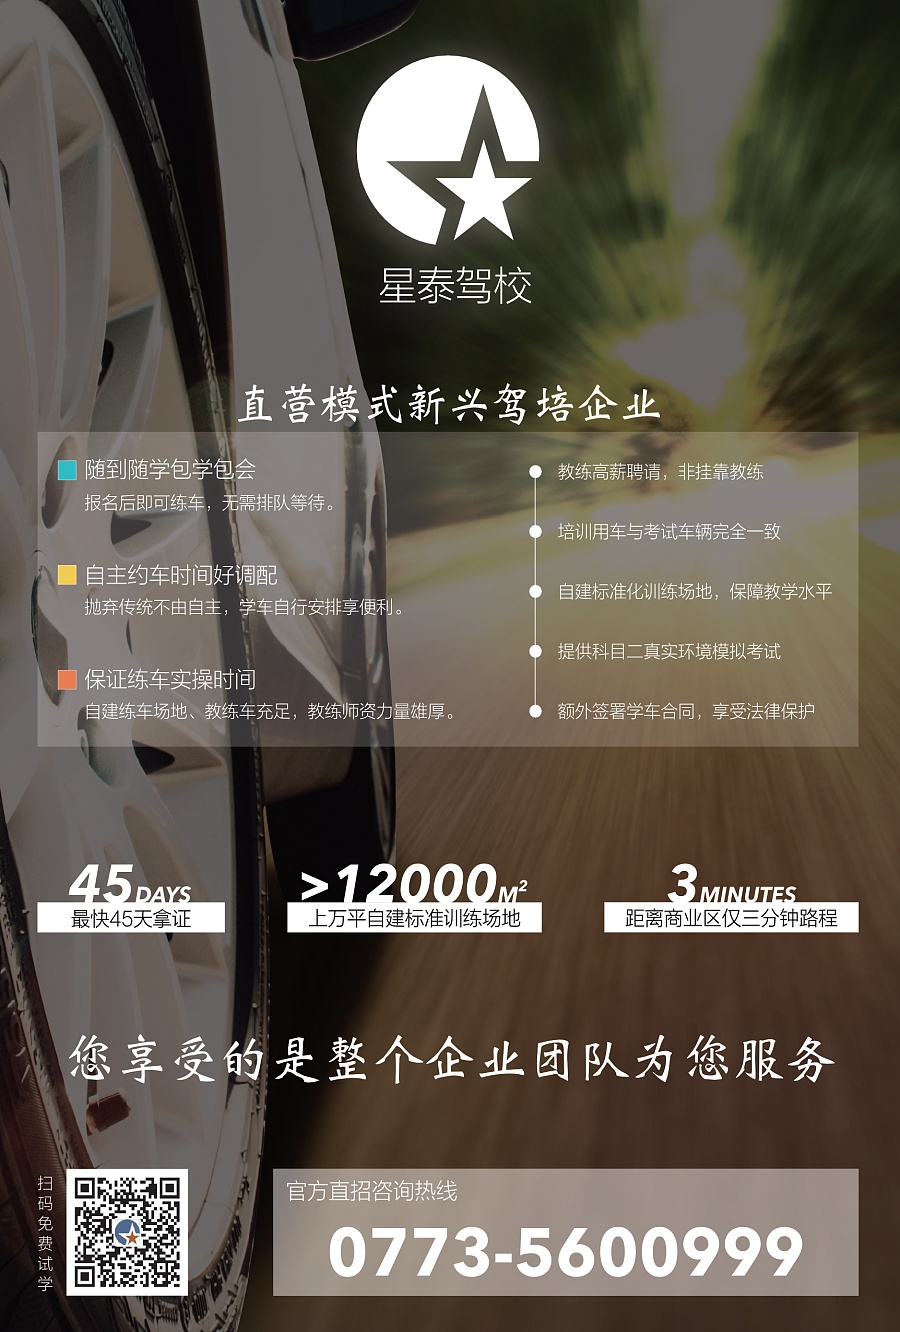 桂林星泰驾校宣传单|DM\/宣传单\/平面广告|平面